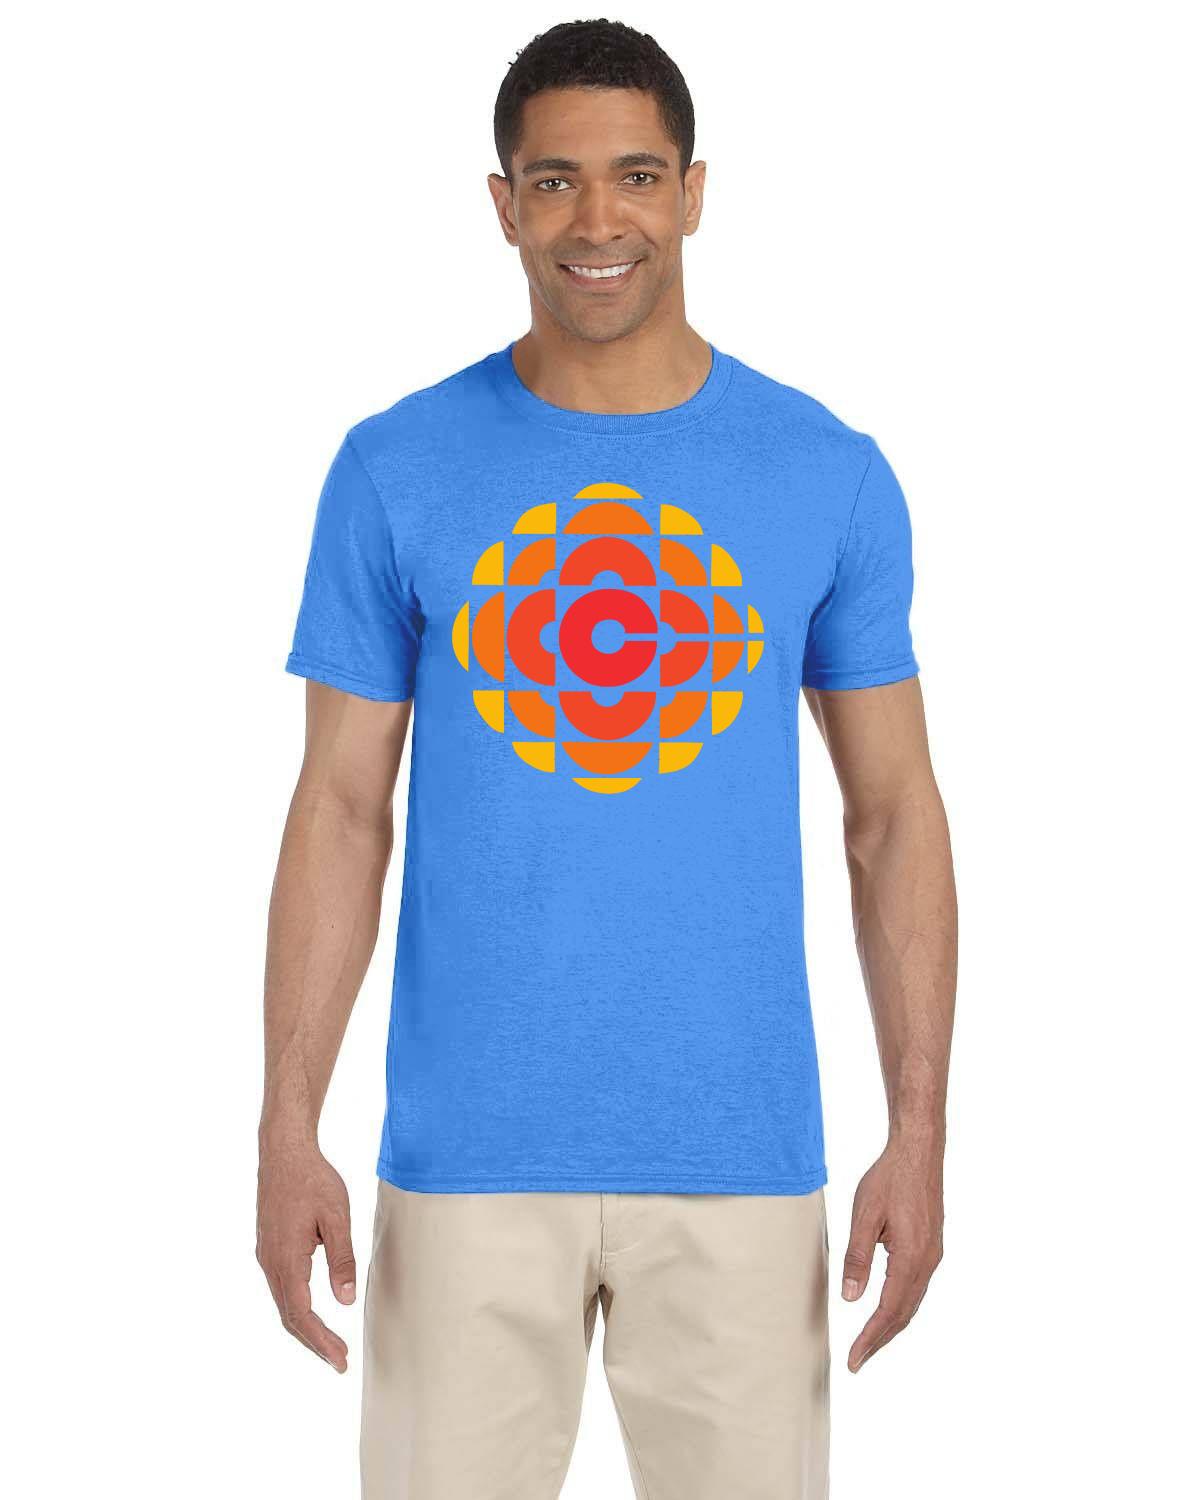 CBC 70's Retro Gem Logo T-Shirt, Canadian Nostalgia, Officially Licensed CBC Apparel